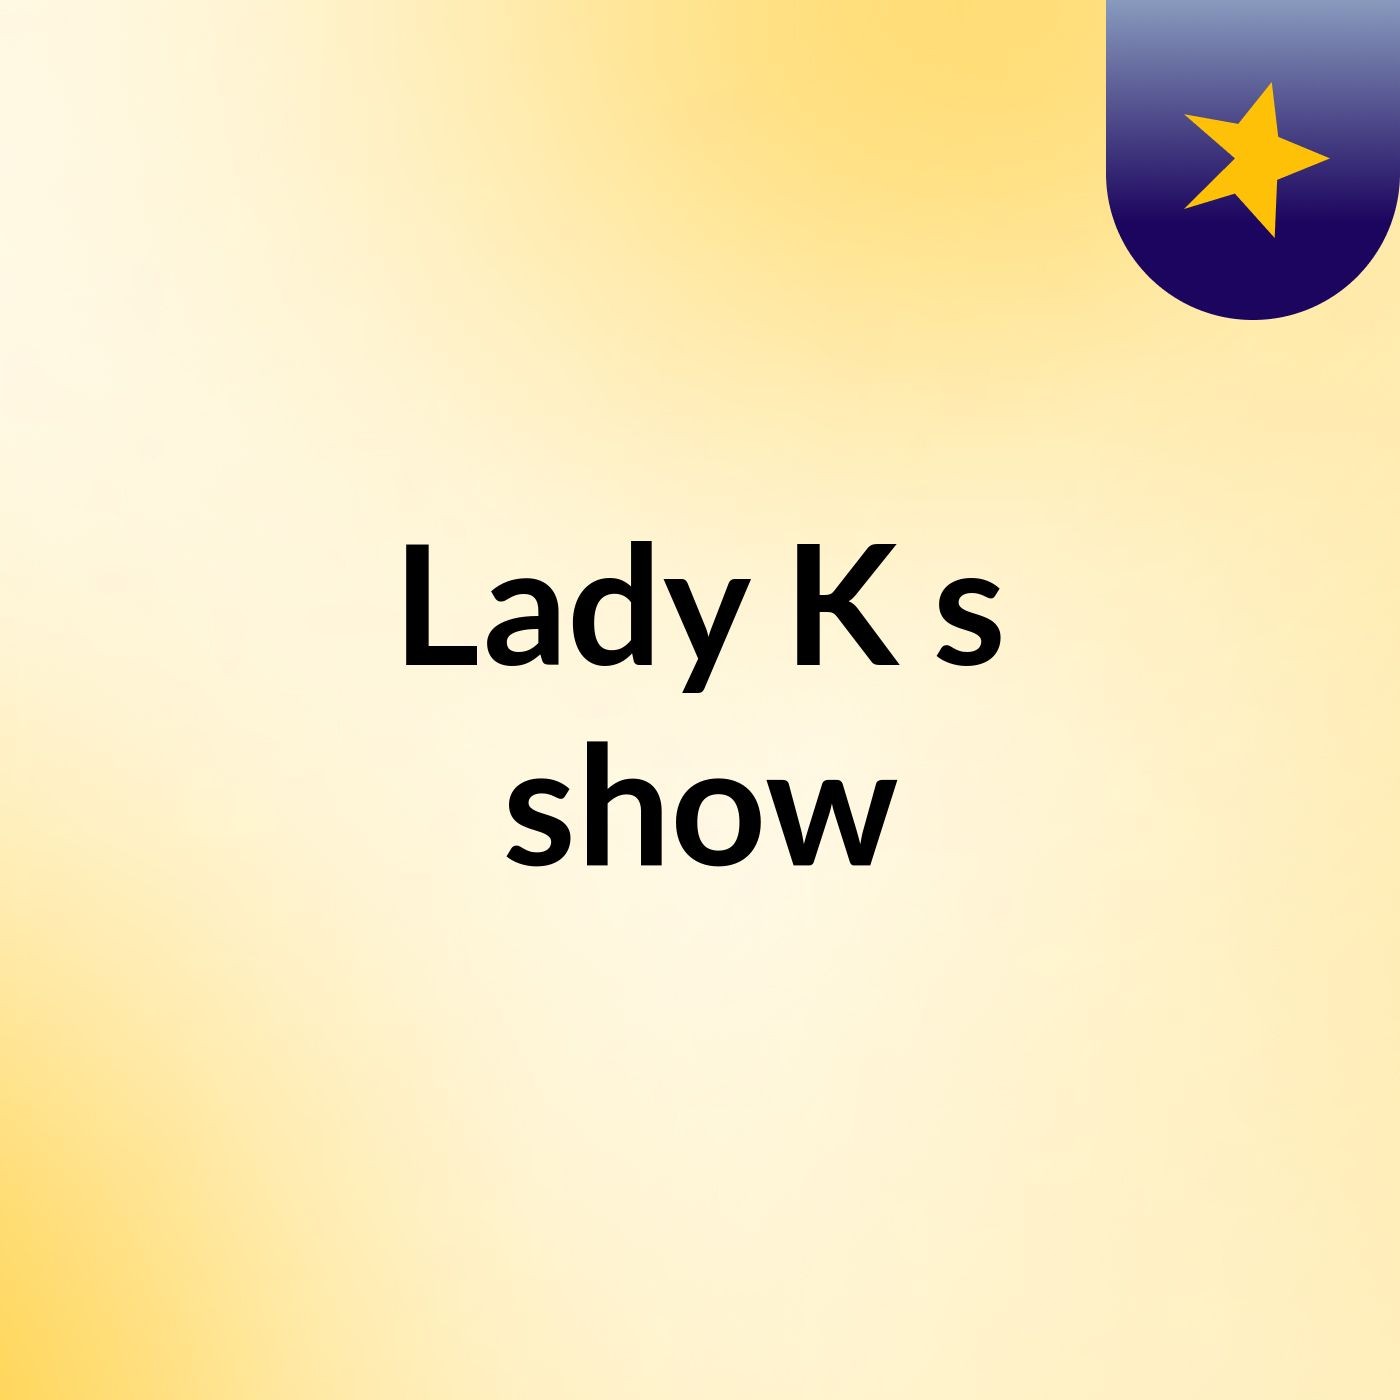 Lady K's show